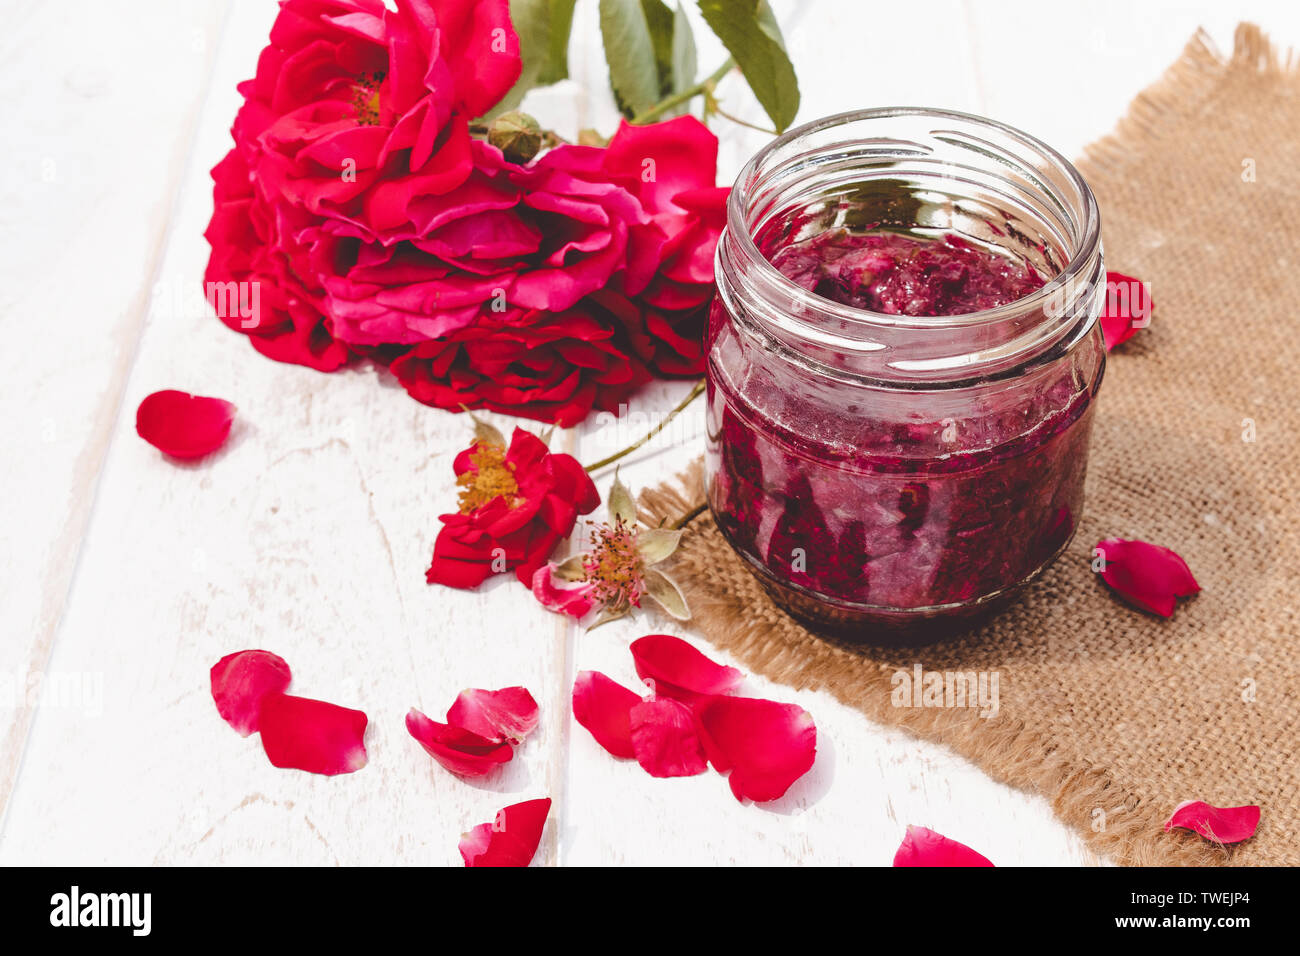 Confiture de pétales de rose dans un bocal de verre sur un fond clair. Confiture de fleurs. Alimentation saine. Copy space Banque D'Images